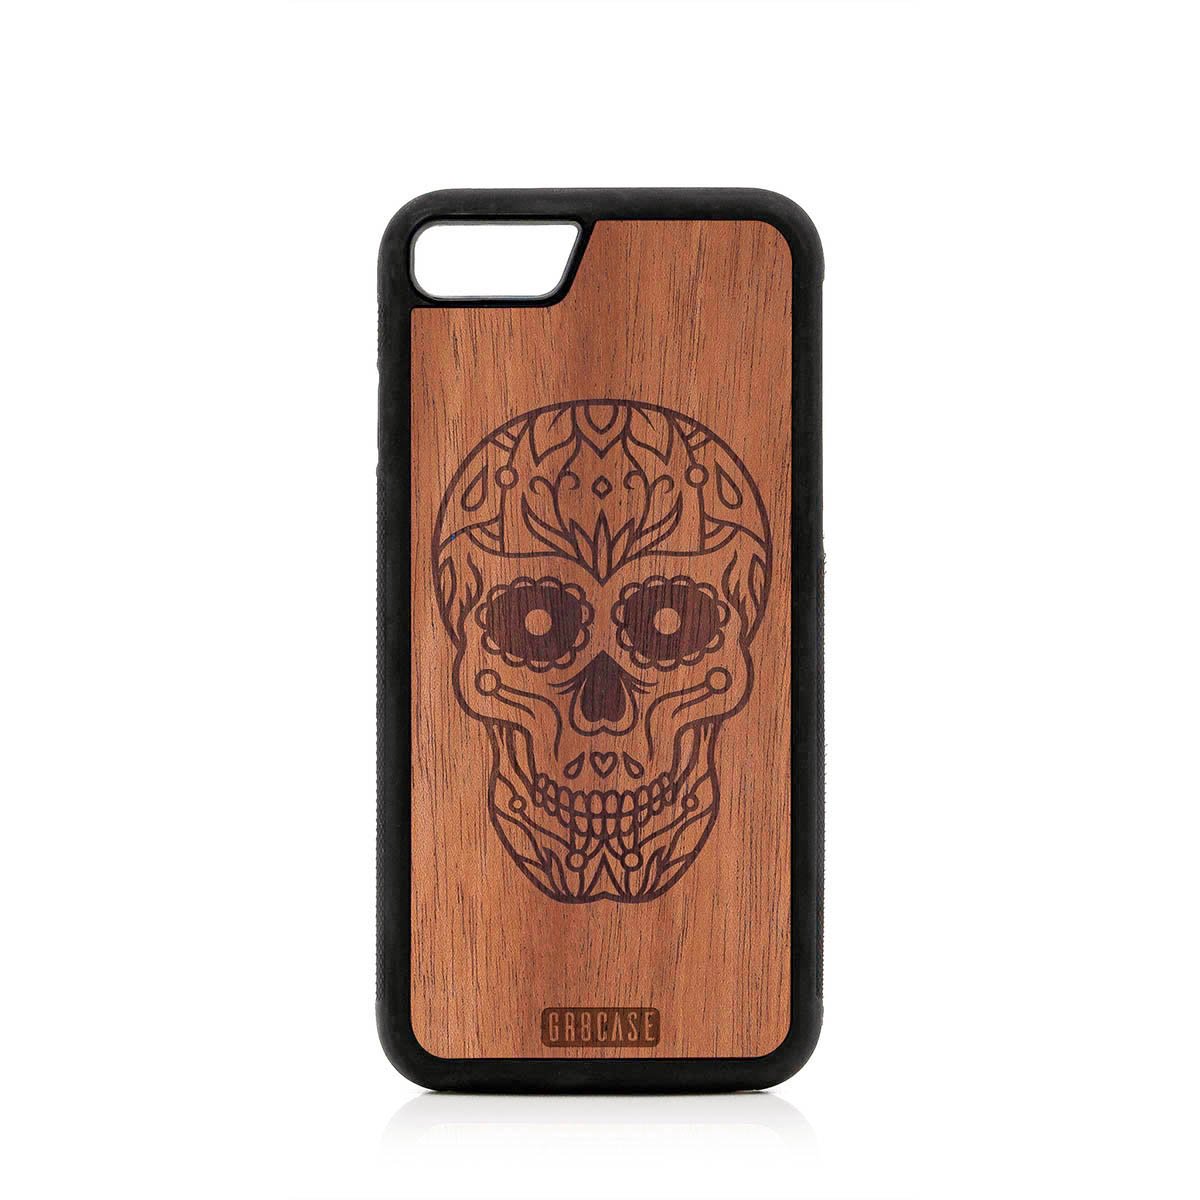 Sugar Skull Design Wood Case For iPhone SE 2020 by GR8CASE